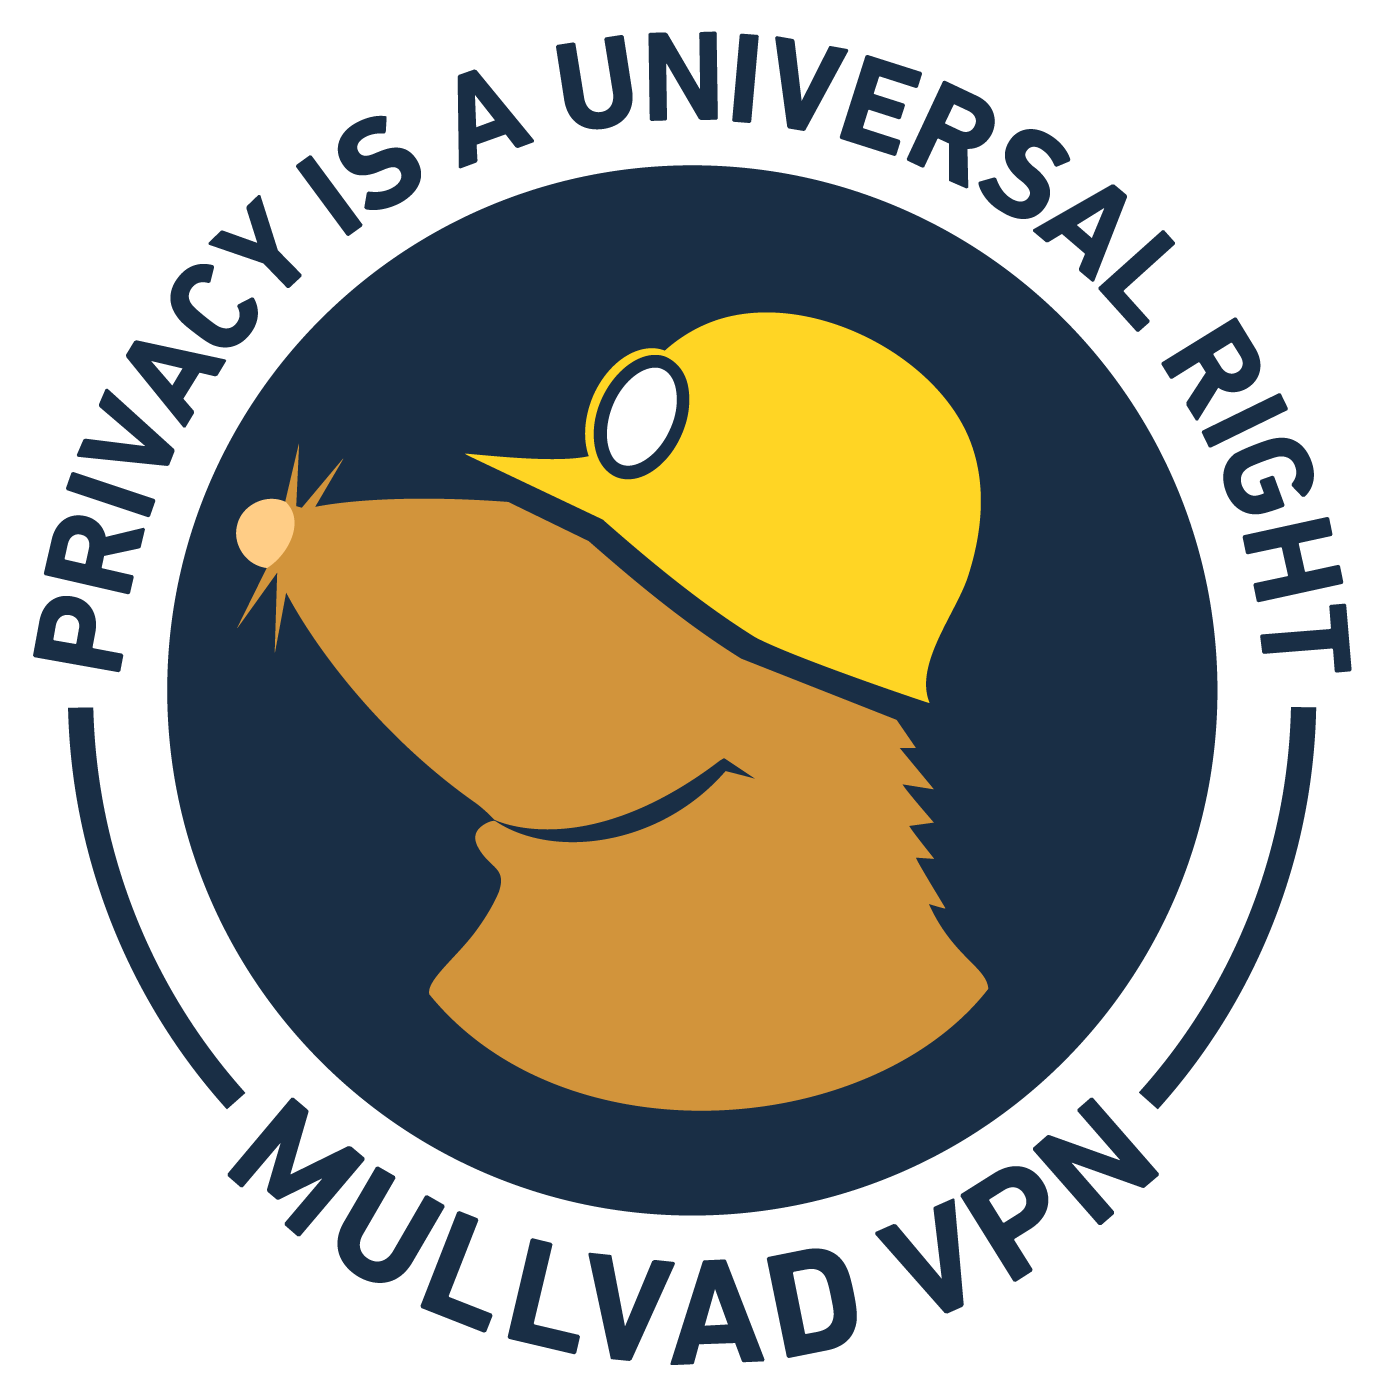 Mullvan VPN